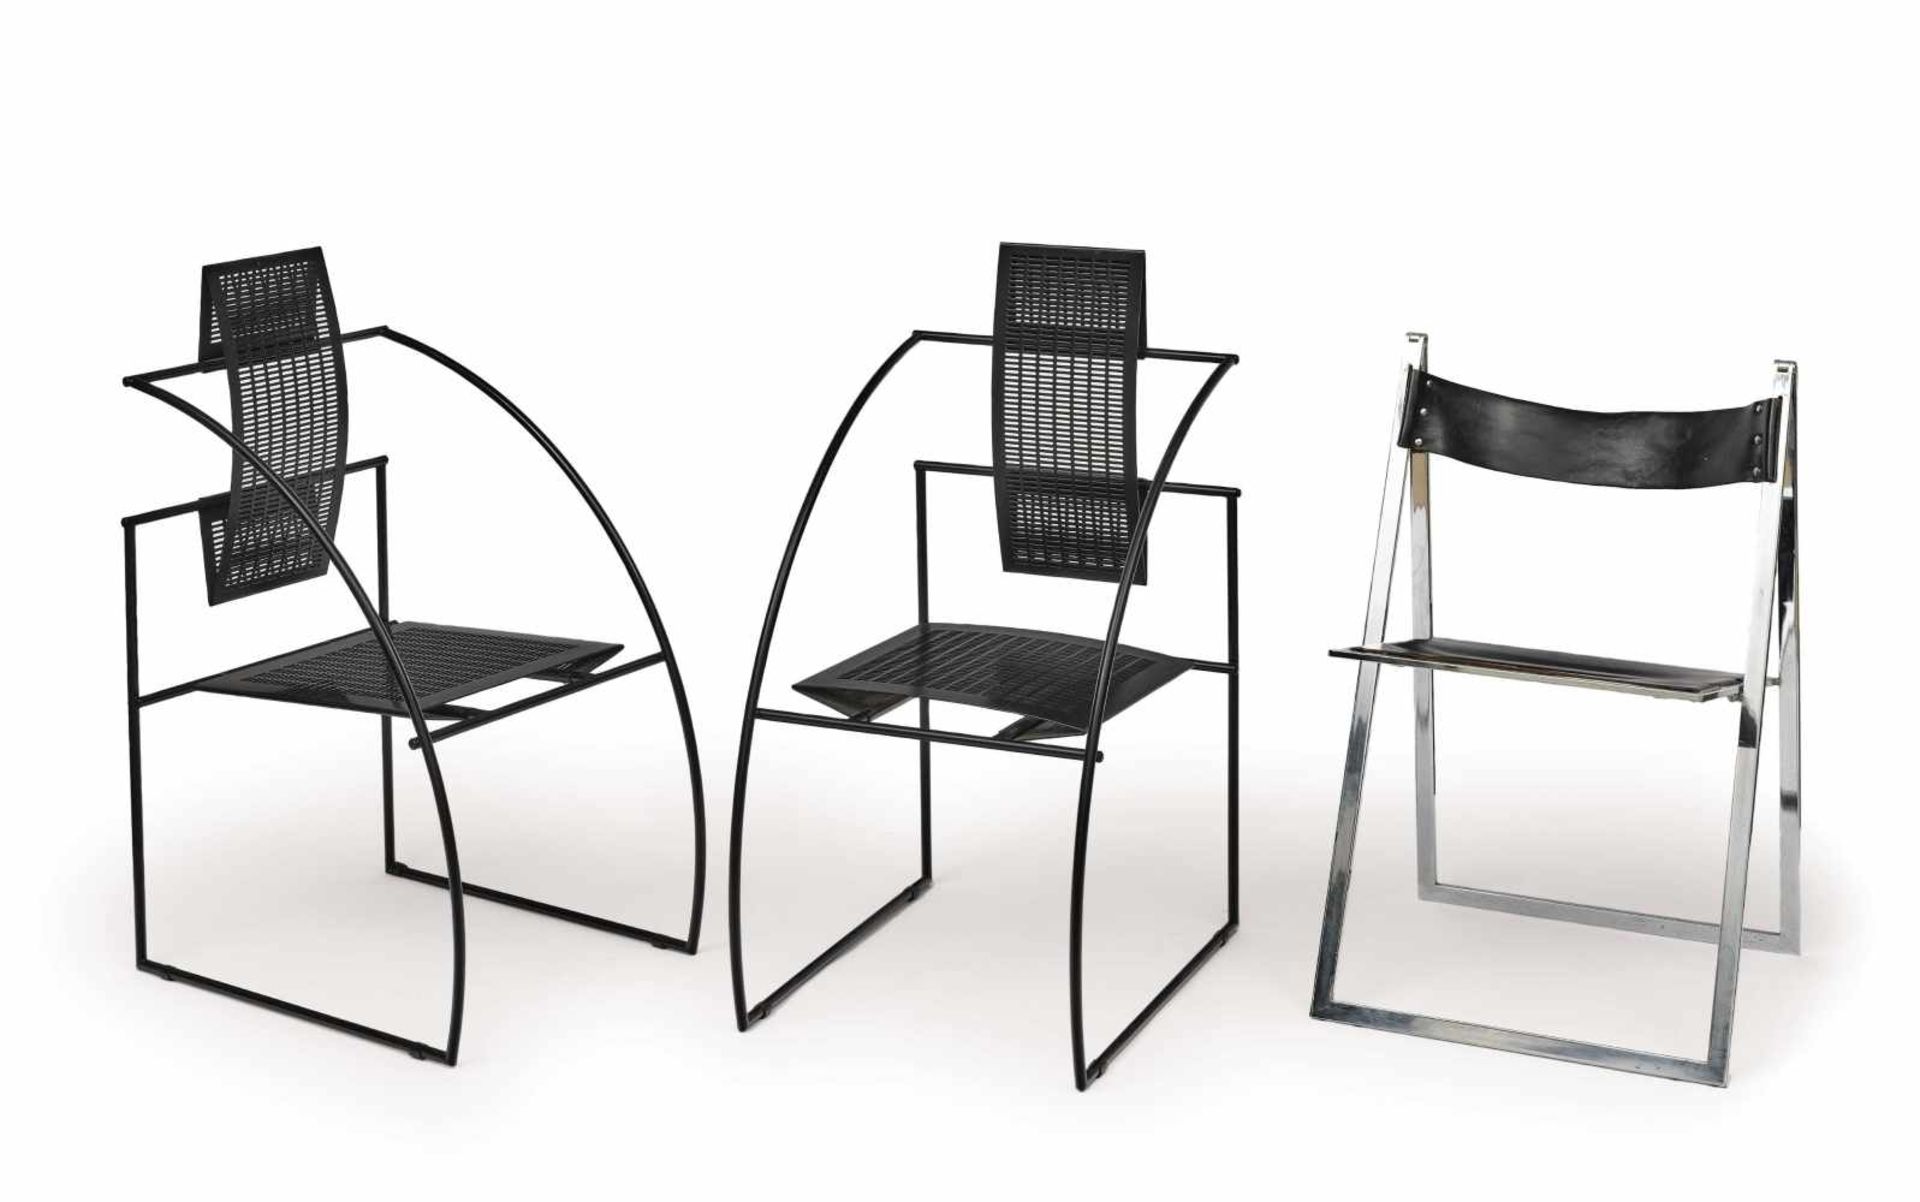 Ein Paar StühleEntwurf Mario Botta, 1980-1989, Ausführung Alias Italien Stahl, geschwärzt.